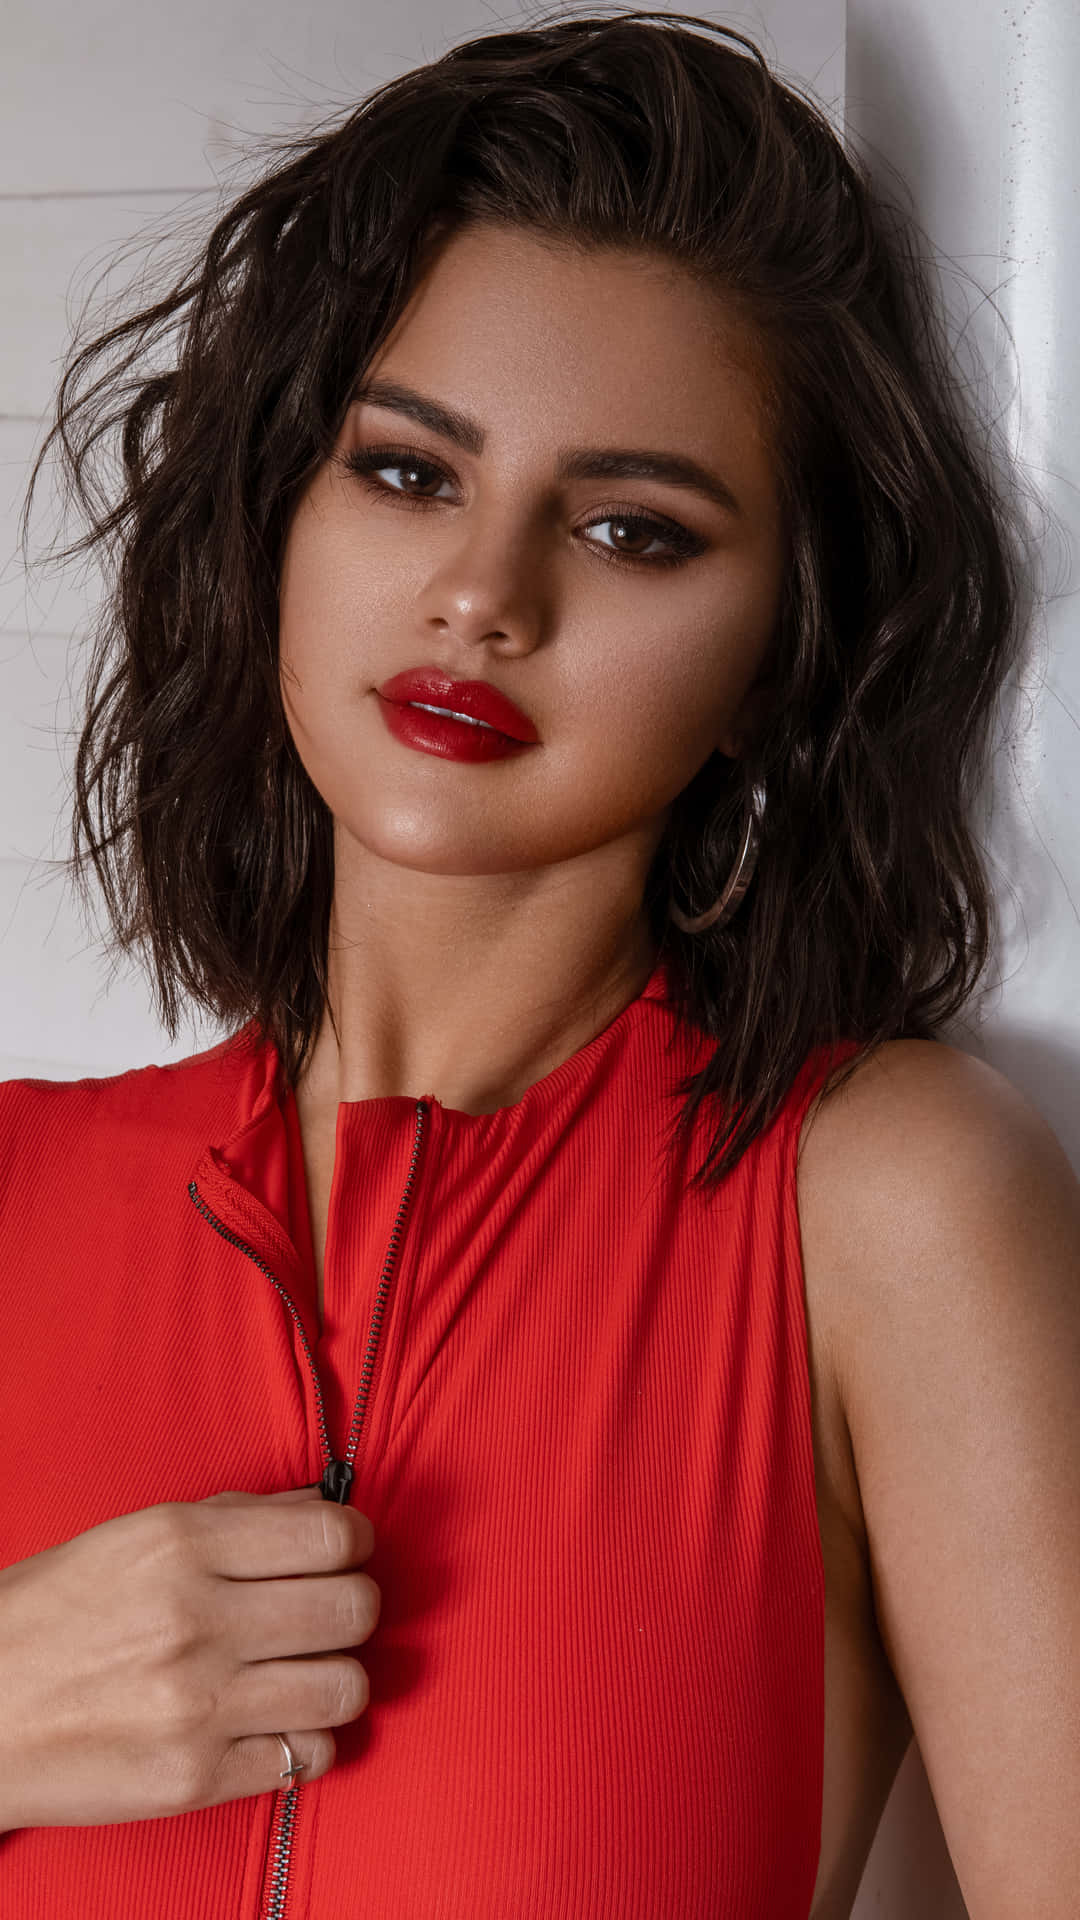 Bleibensie Mit Ihrem Lieblingskünstler Selena Gomez Auf Ihrem Iphone Verbunden! Wallpaper